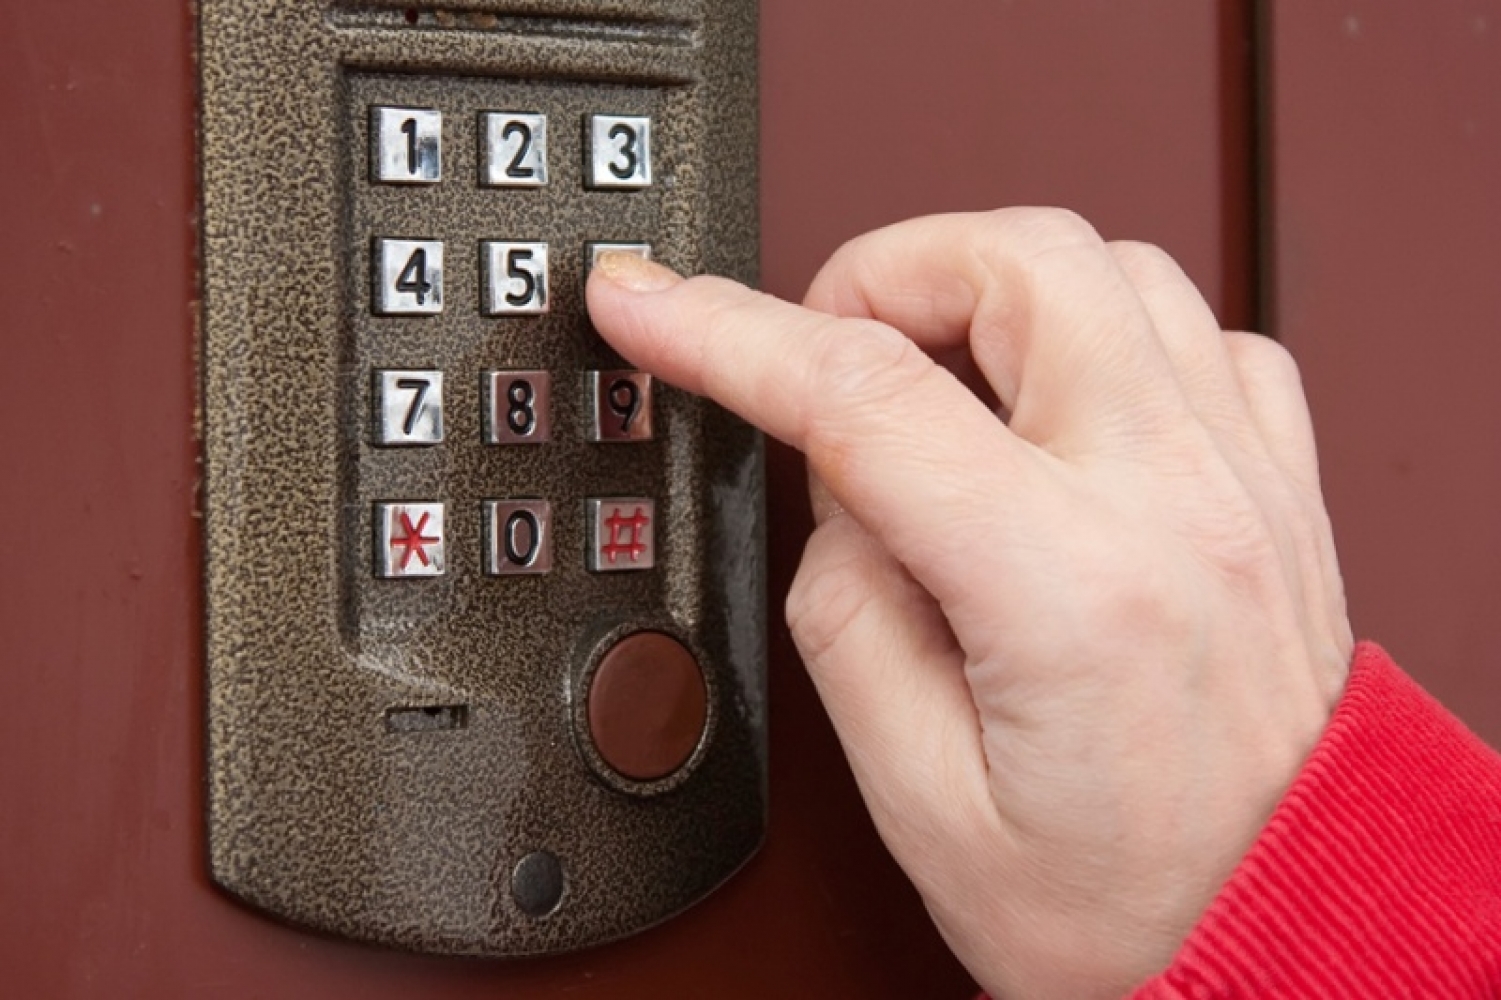 Секретный режим домофона: нажмите четыре цифры — откроется любая дверь